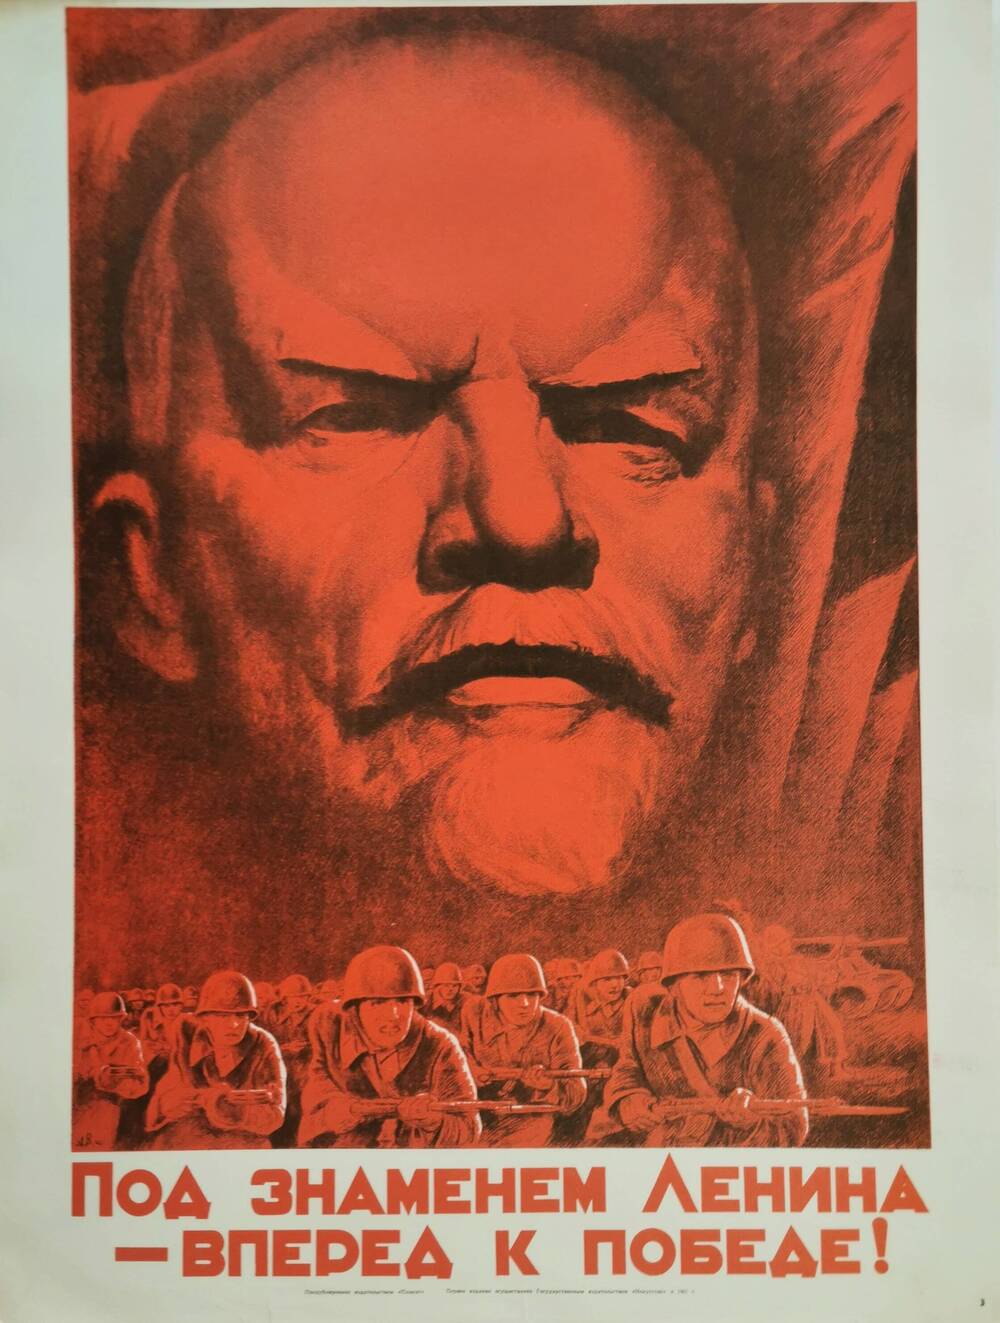 Плакат №3 «Под знаменем Ленина – вперед к победе!» из комплекта «Плакаты Великой Отечественной войны 1941-1945»